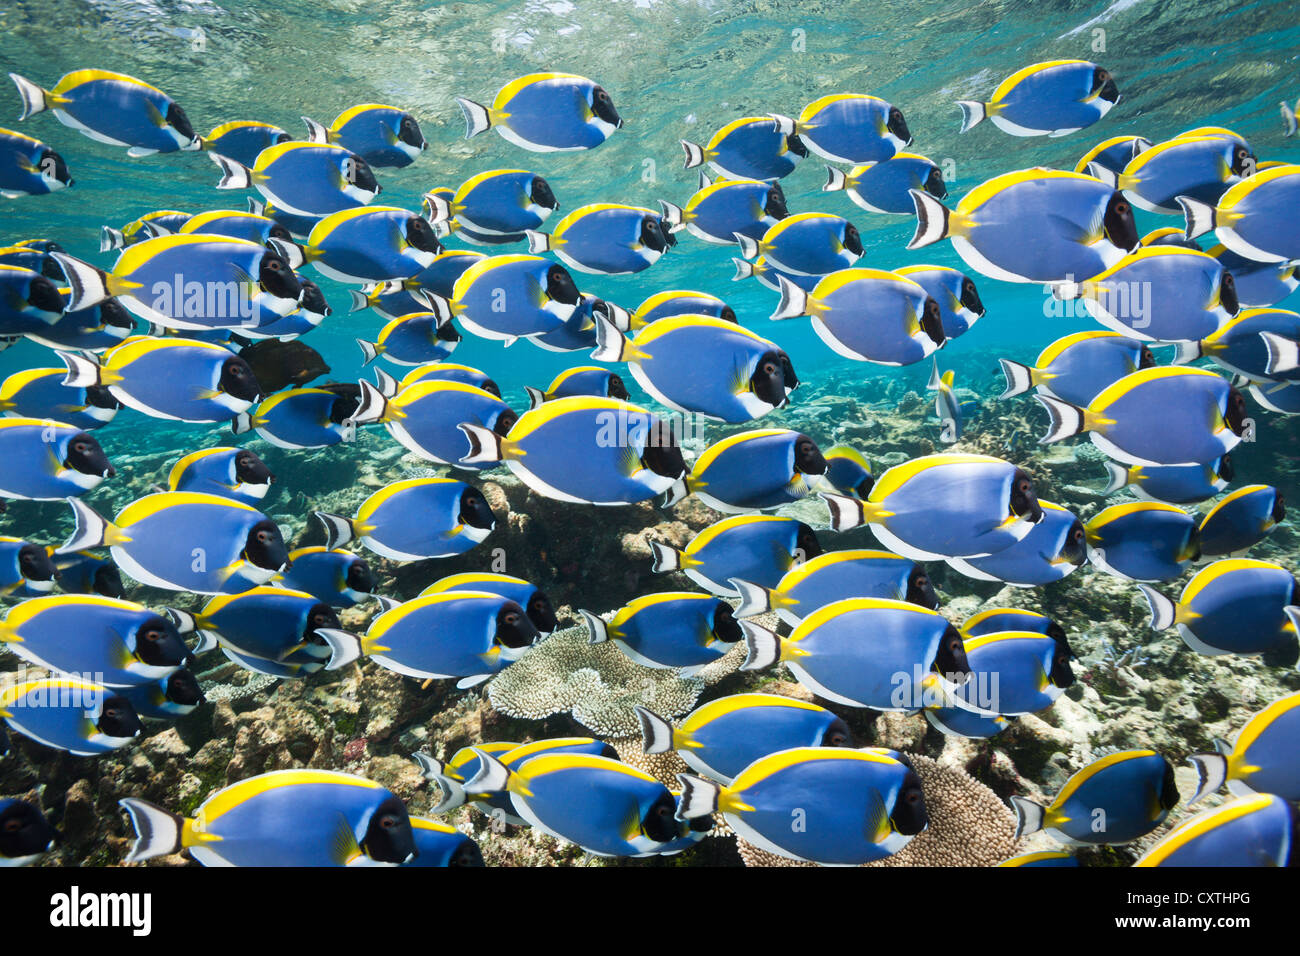 Banc de bleu poudre Tang, Acanthurus leucosternon, Thaa Atoll, Maldives Banque D'Images